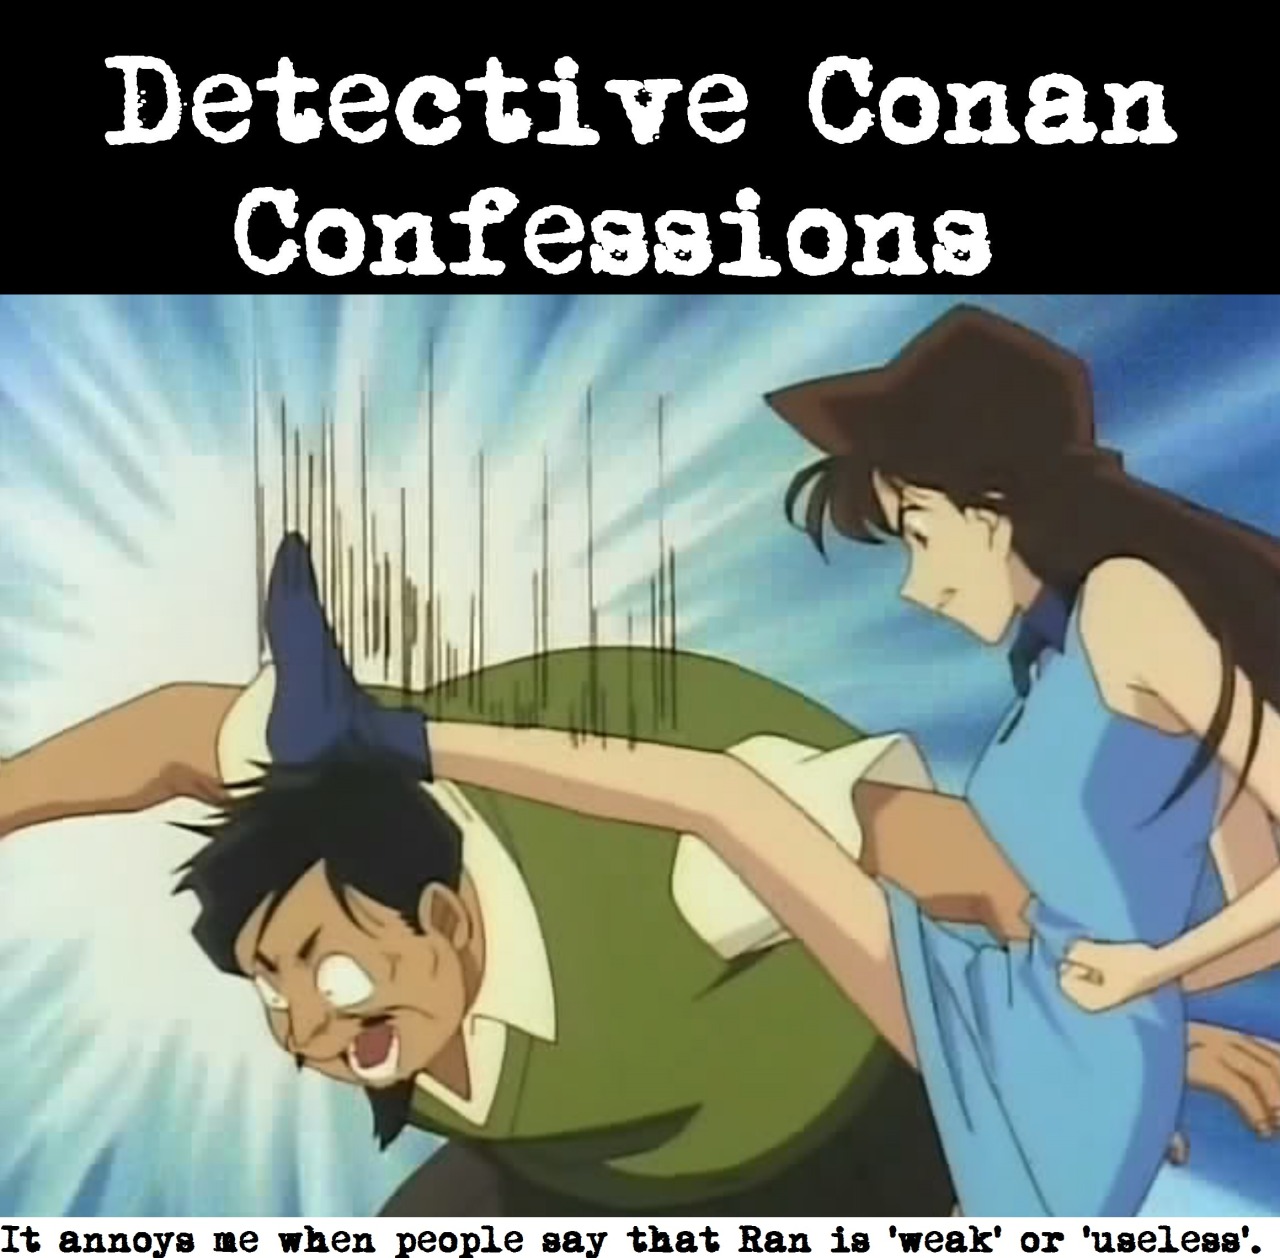 Detective conan ran ass